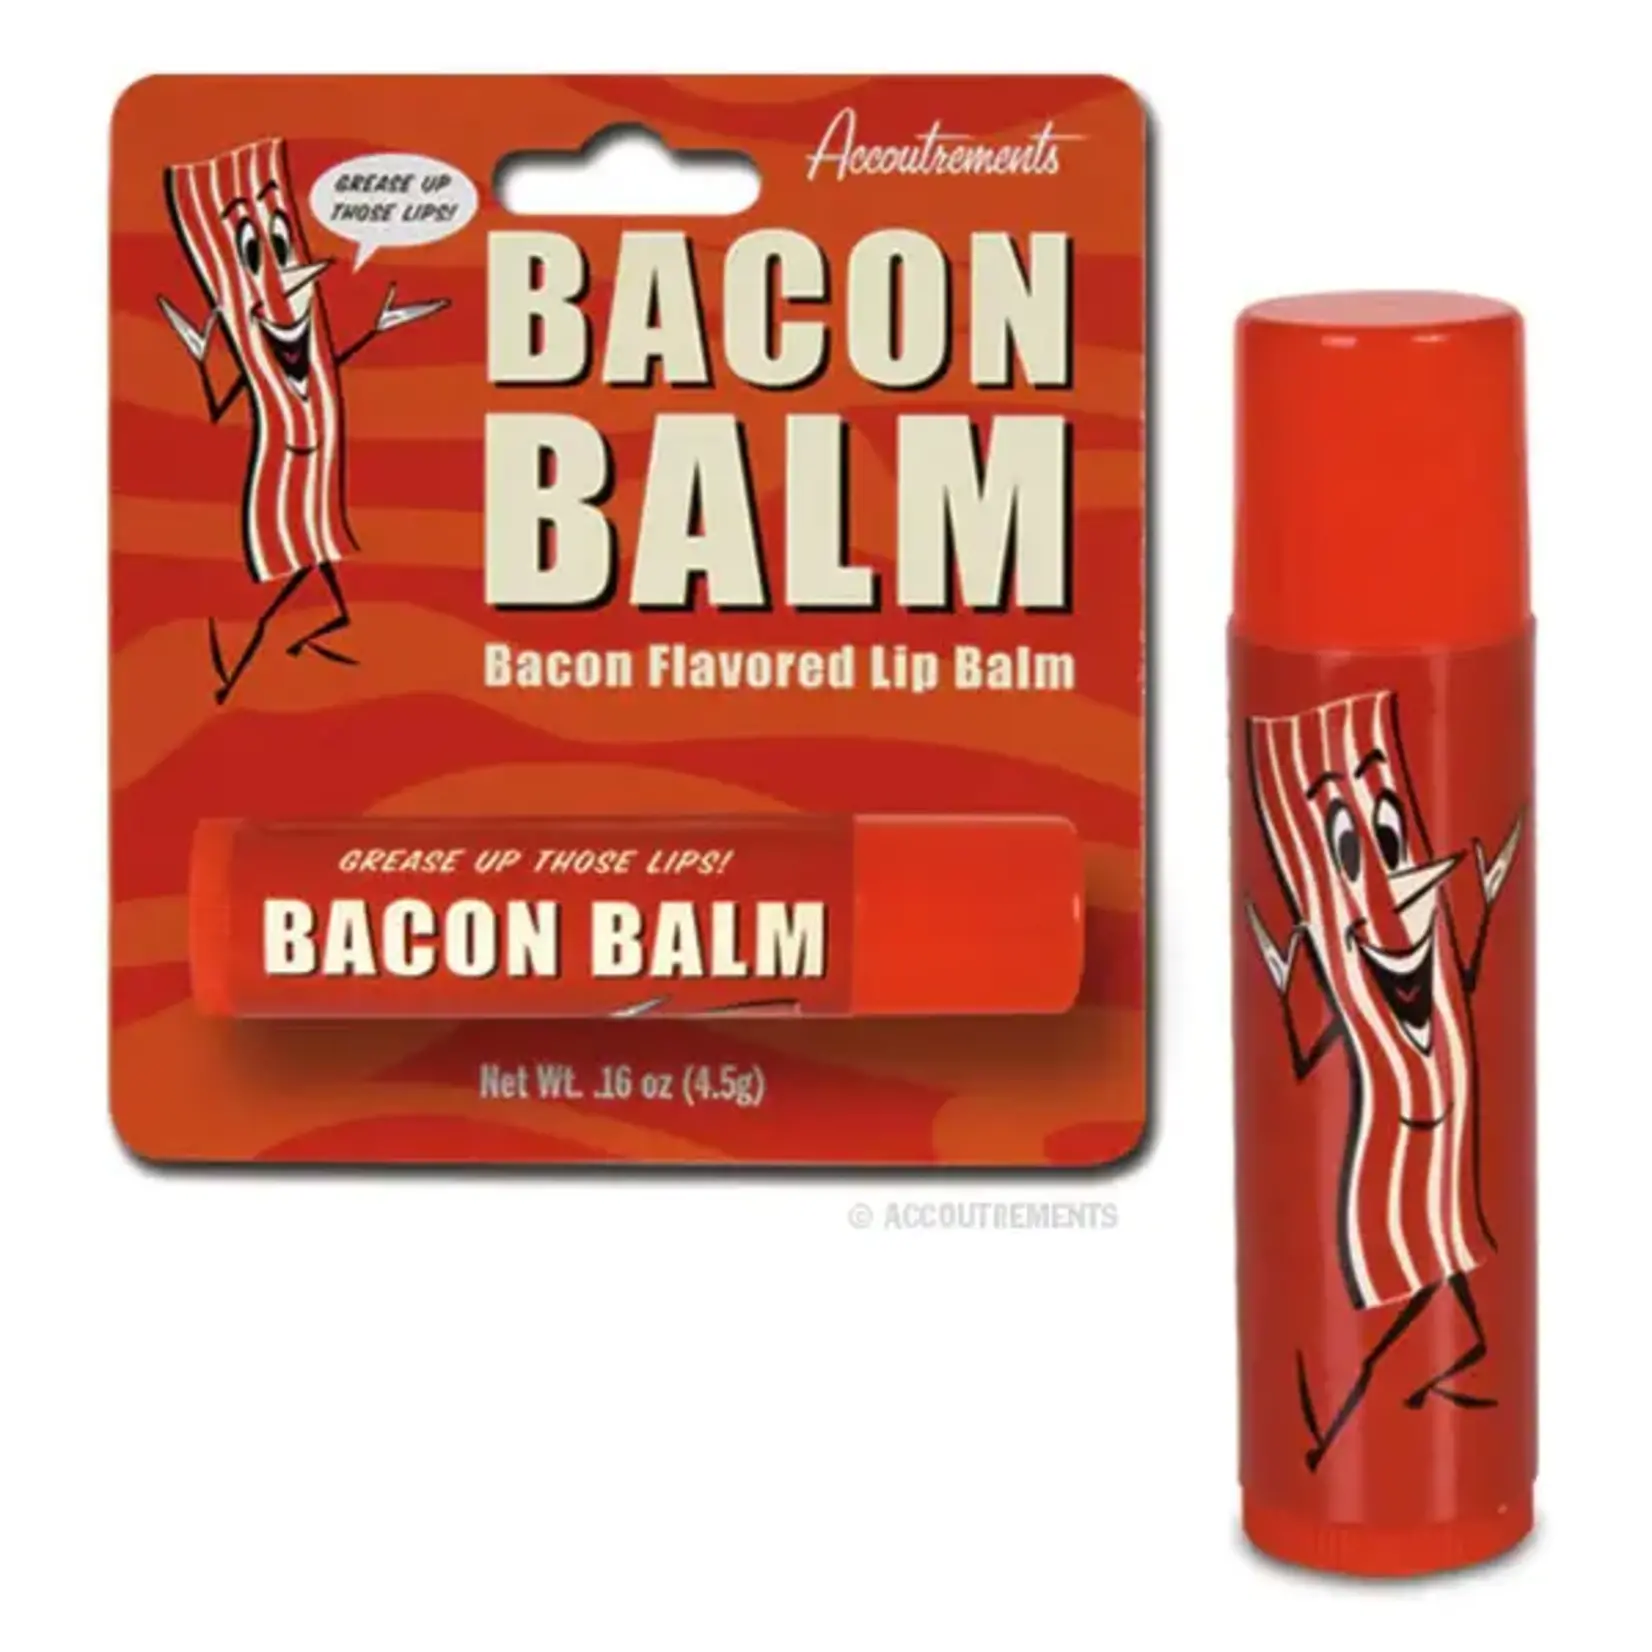 Bacon Balm